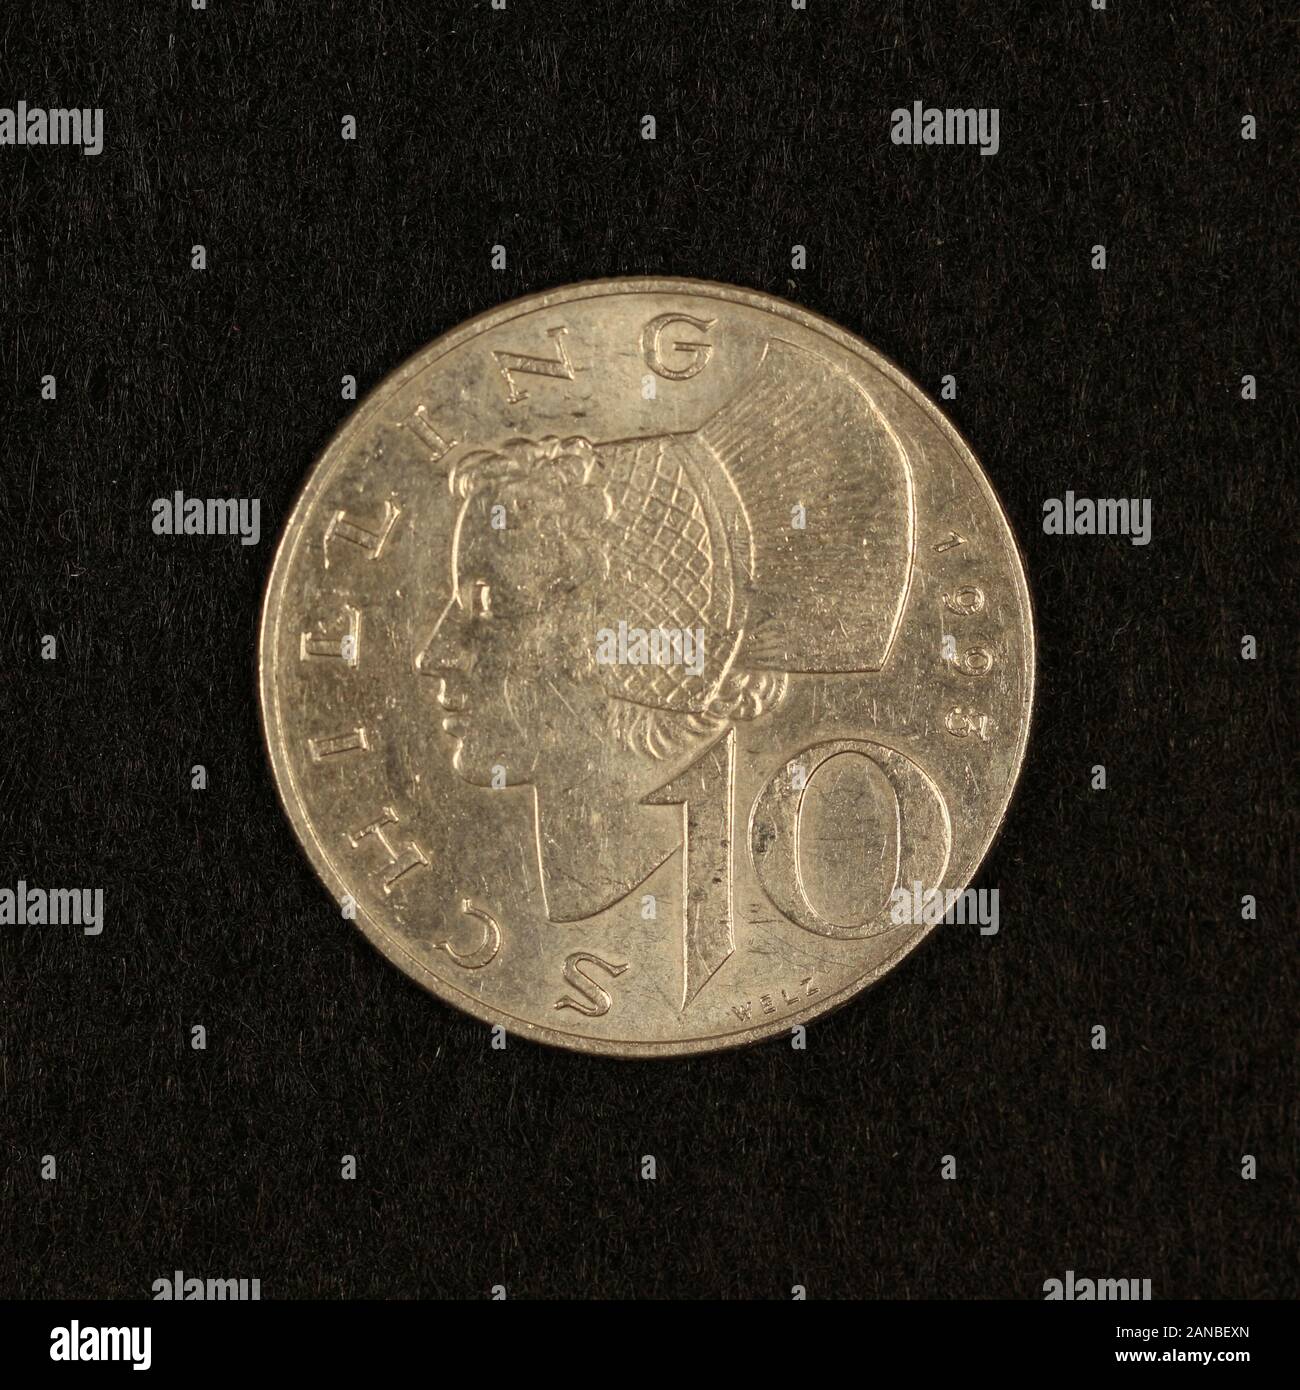 Vorderseite einer ehemaligen Österreichischen 10 Schilling Münze Foto Stock